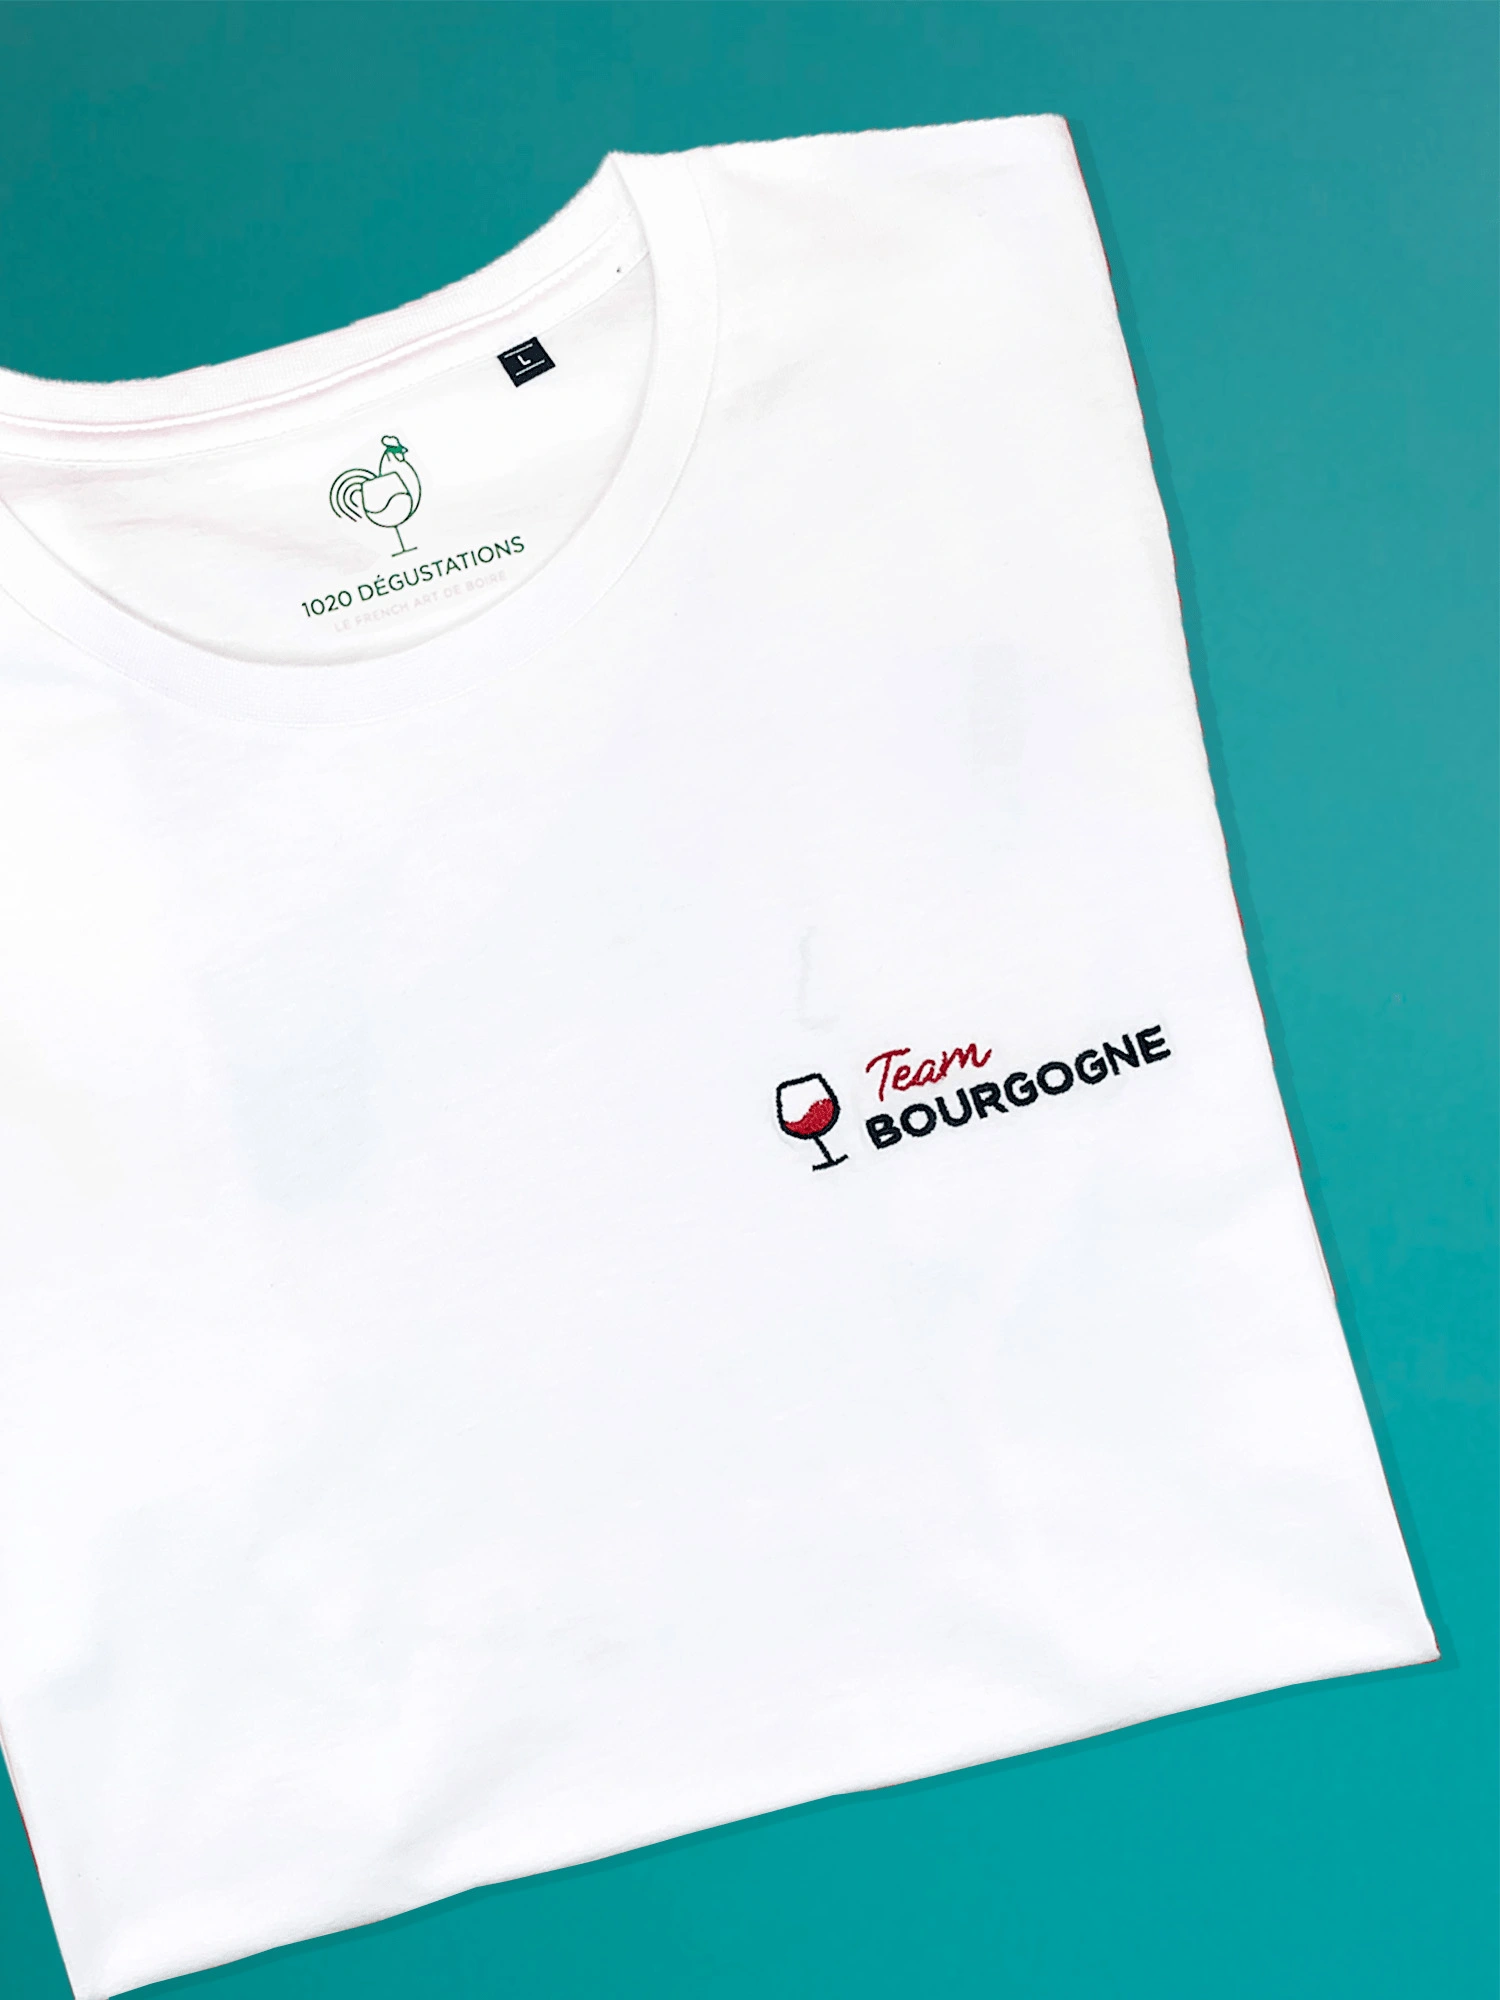 Tee-shirt 1020 - Team Bourgogne